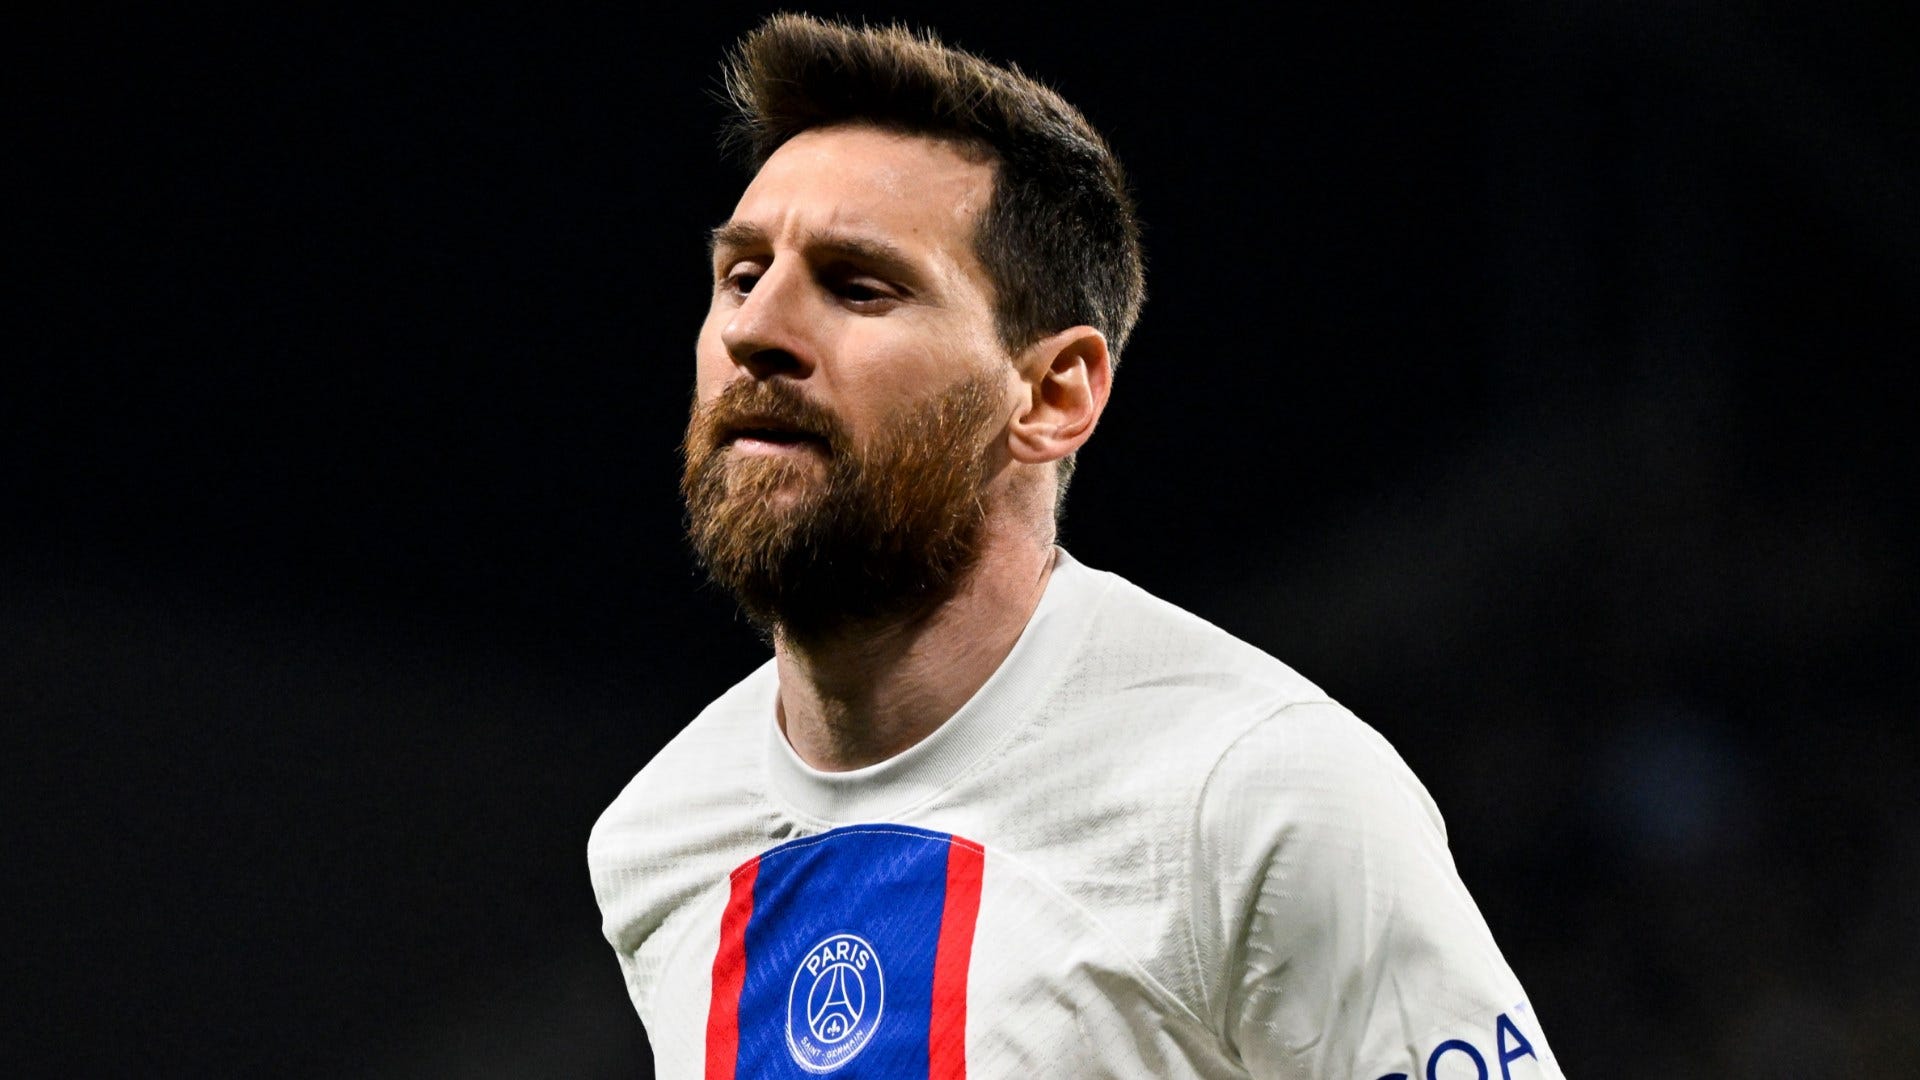 Lionel Messi trifft nach PSG-Abschied offenbar schnelle Entscheidung über seine Zukunft